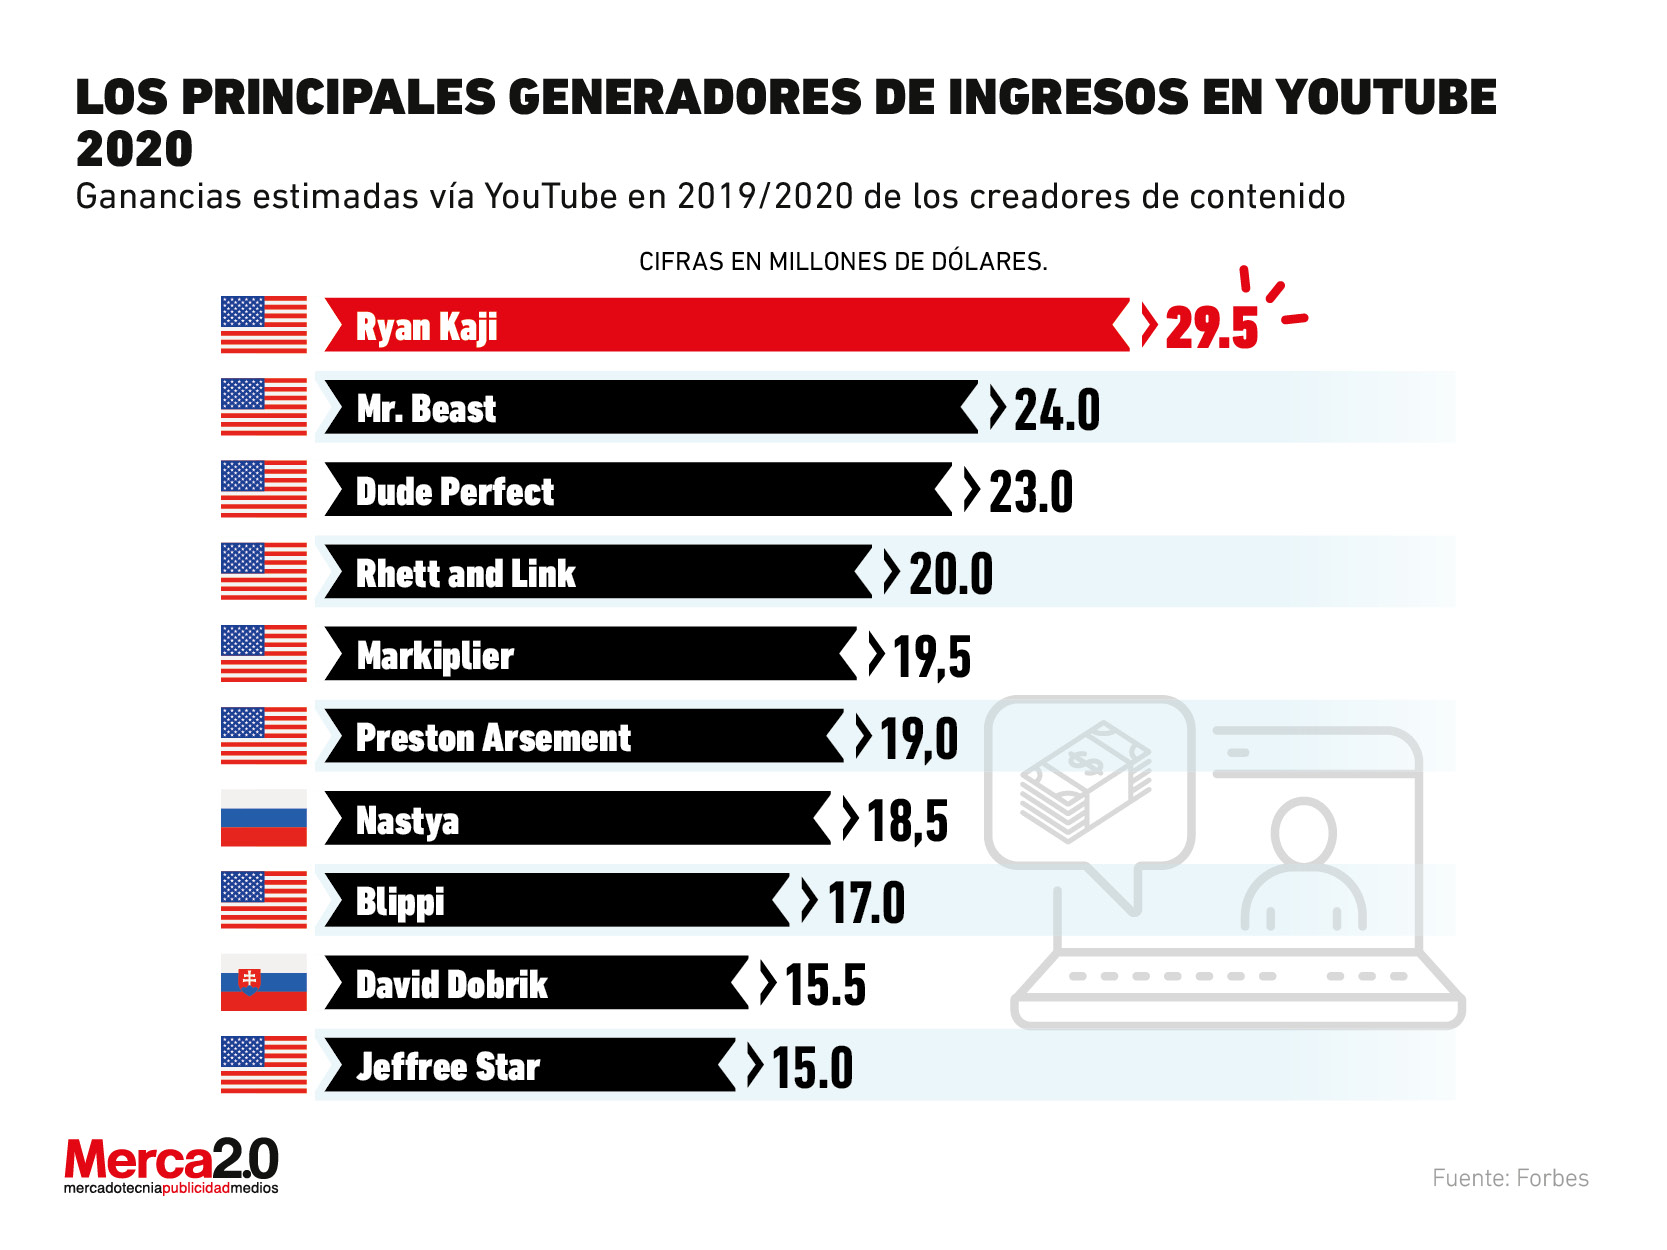 Los YouTubers que generaron más ingresos en 2020